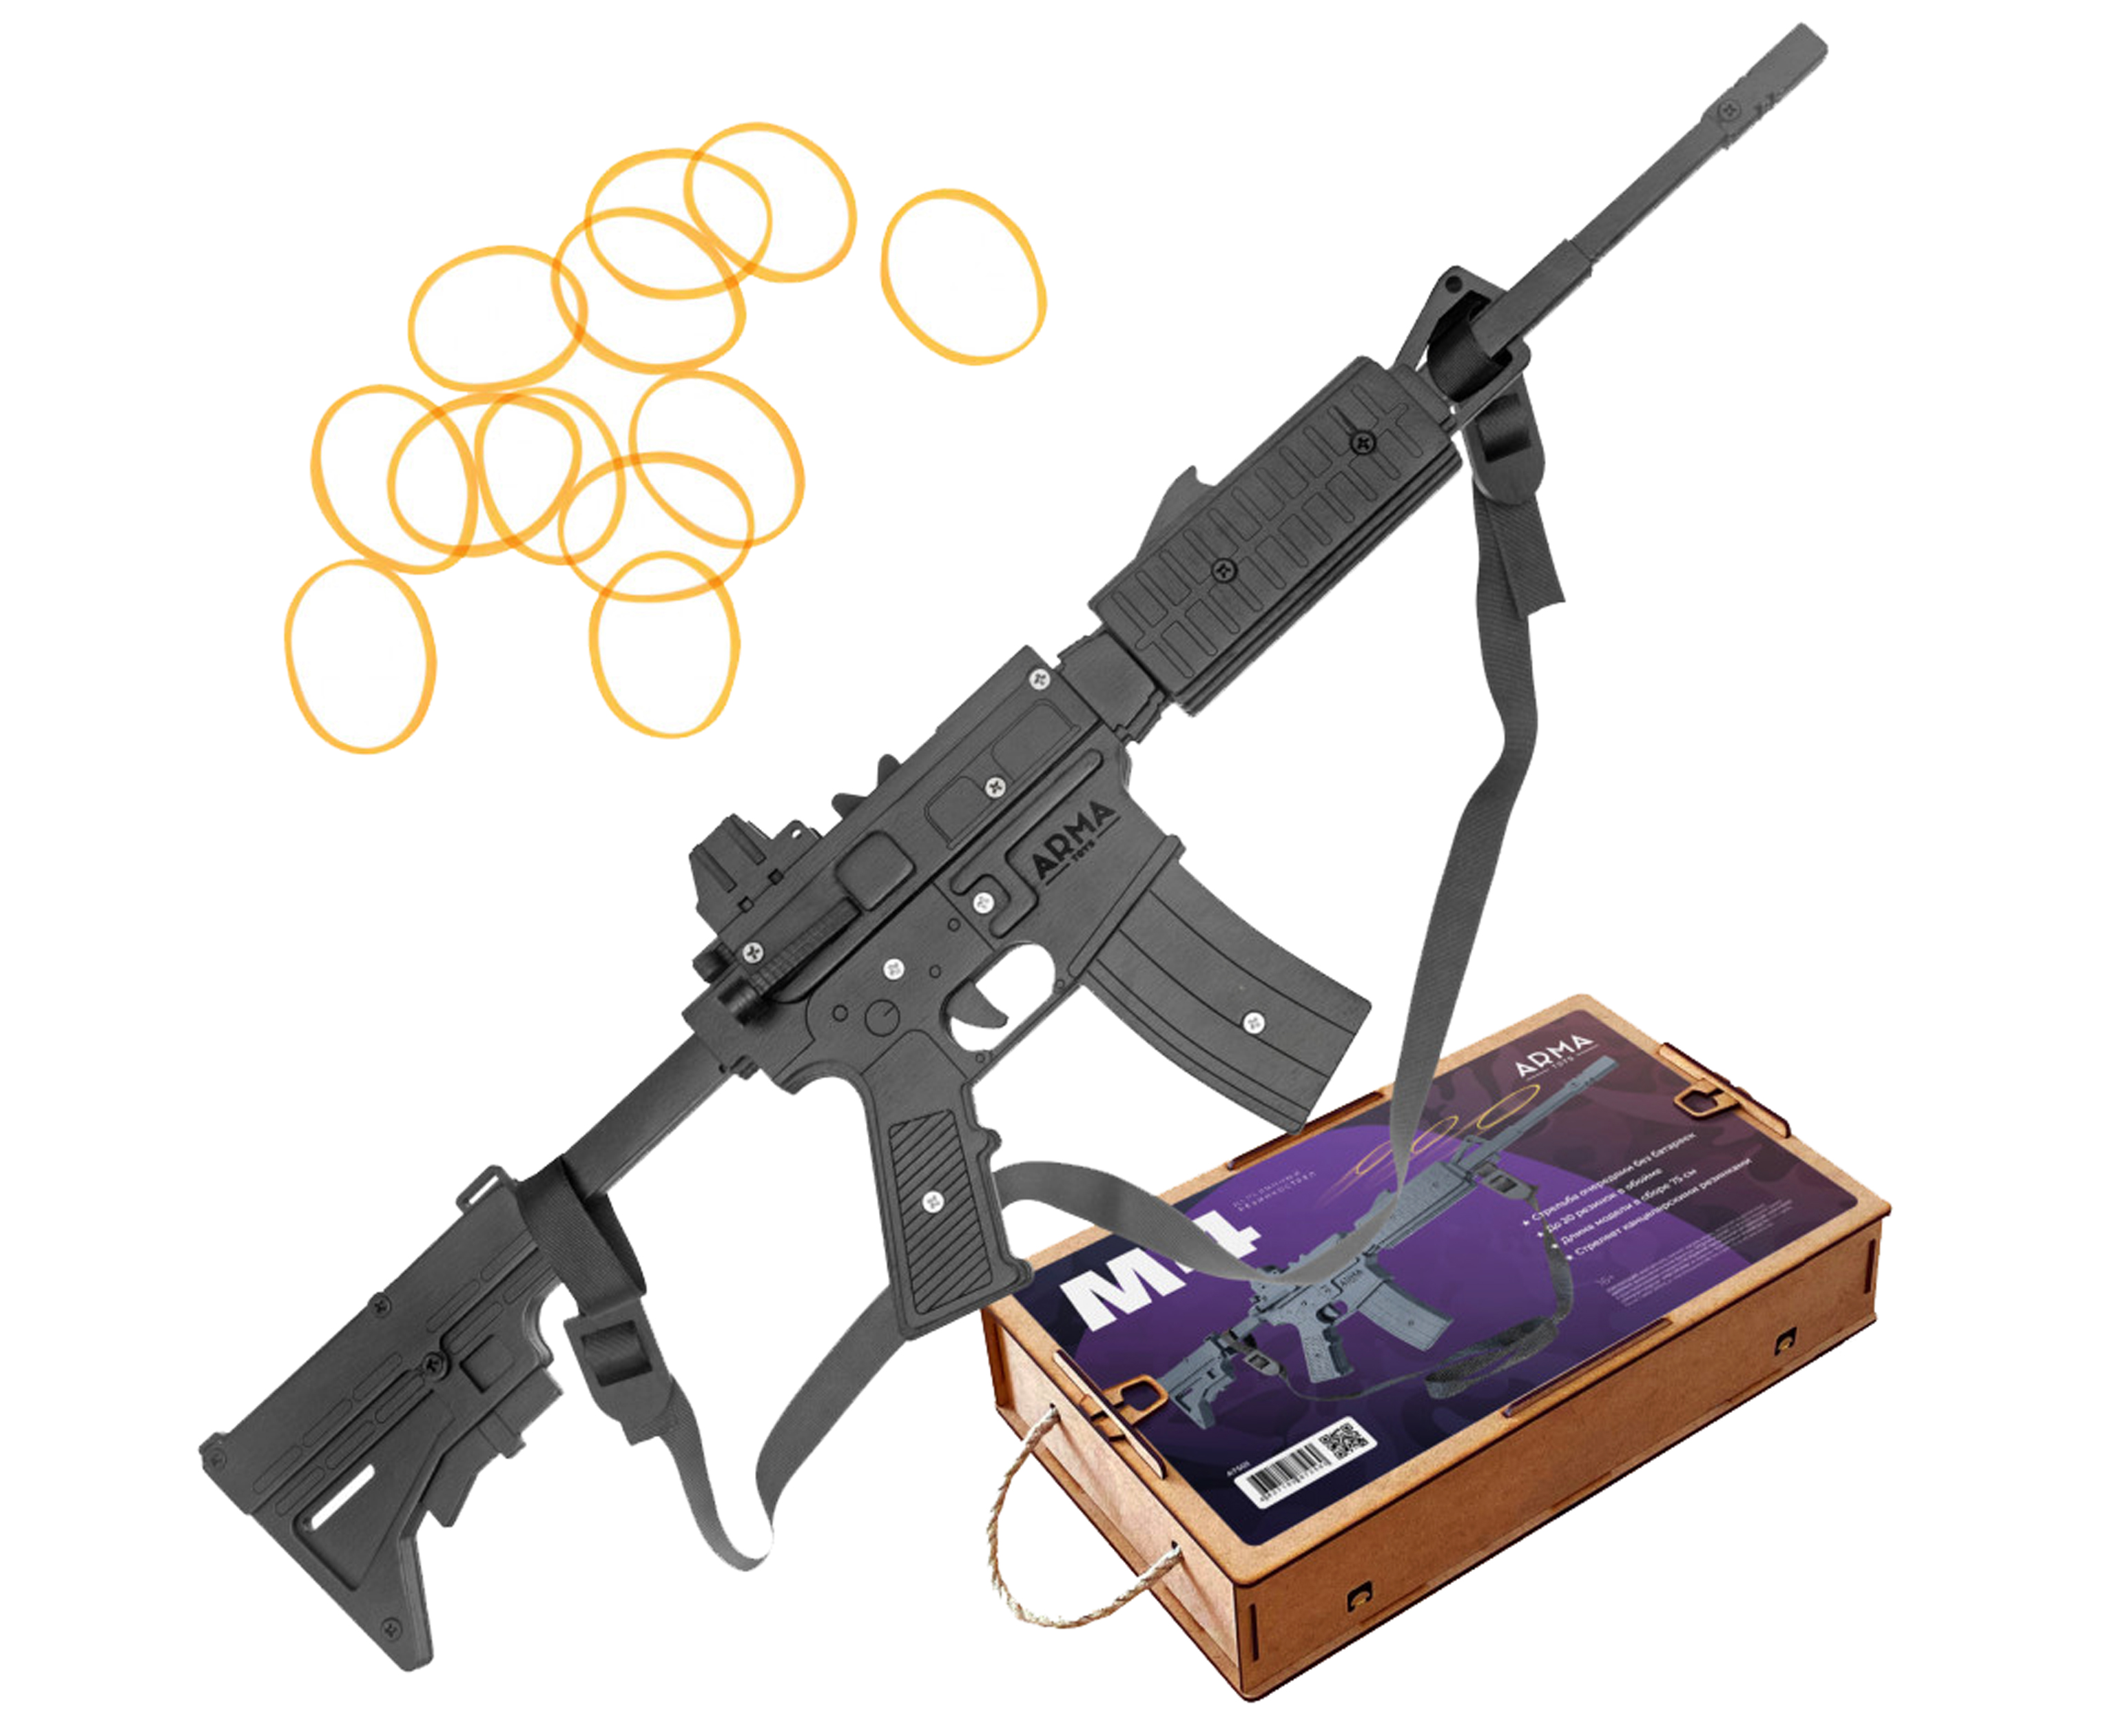 Резинкострел игрушечный Arma toys винтовка M4 макет, AR-15, AT501 резинкострел arma toys револьвер frings макет ат002